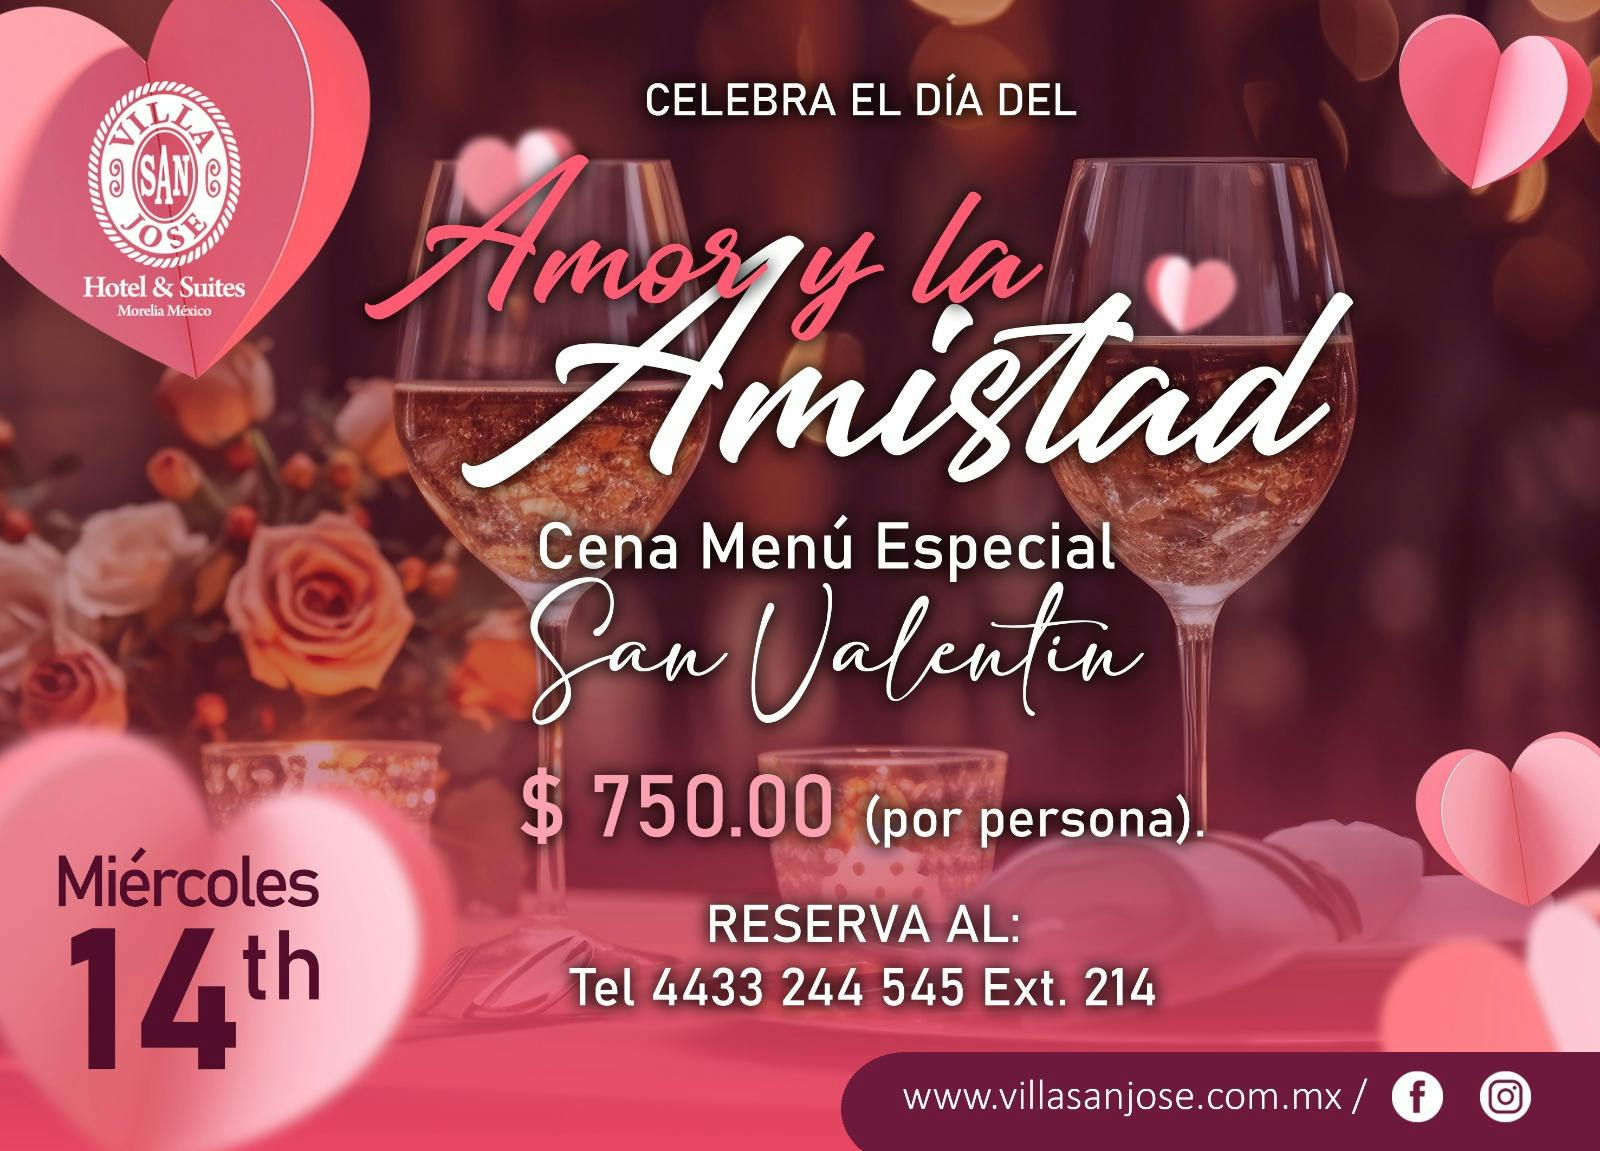 Celebra este 14 de febrero en el Restaurante del Hotel & Suites Villa San José, en un ambiente romantico, una vista hermosa.